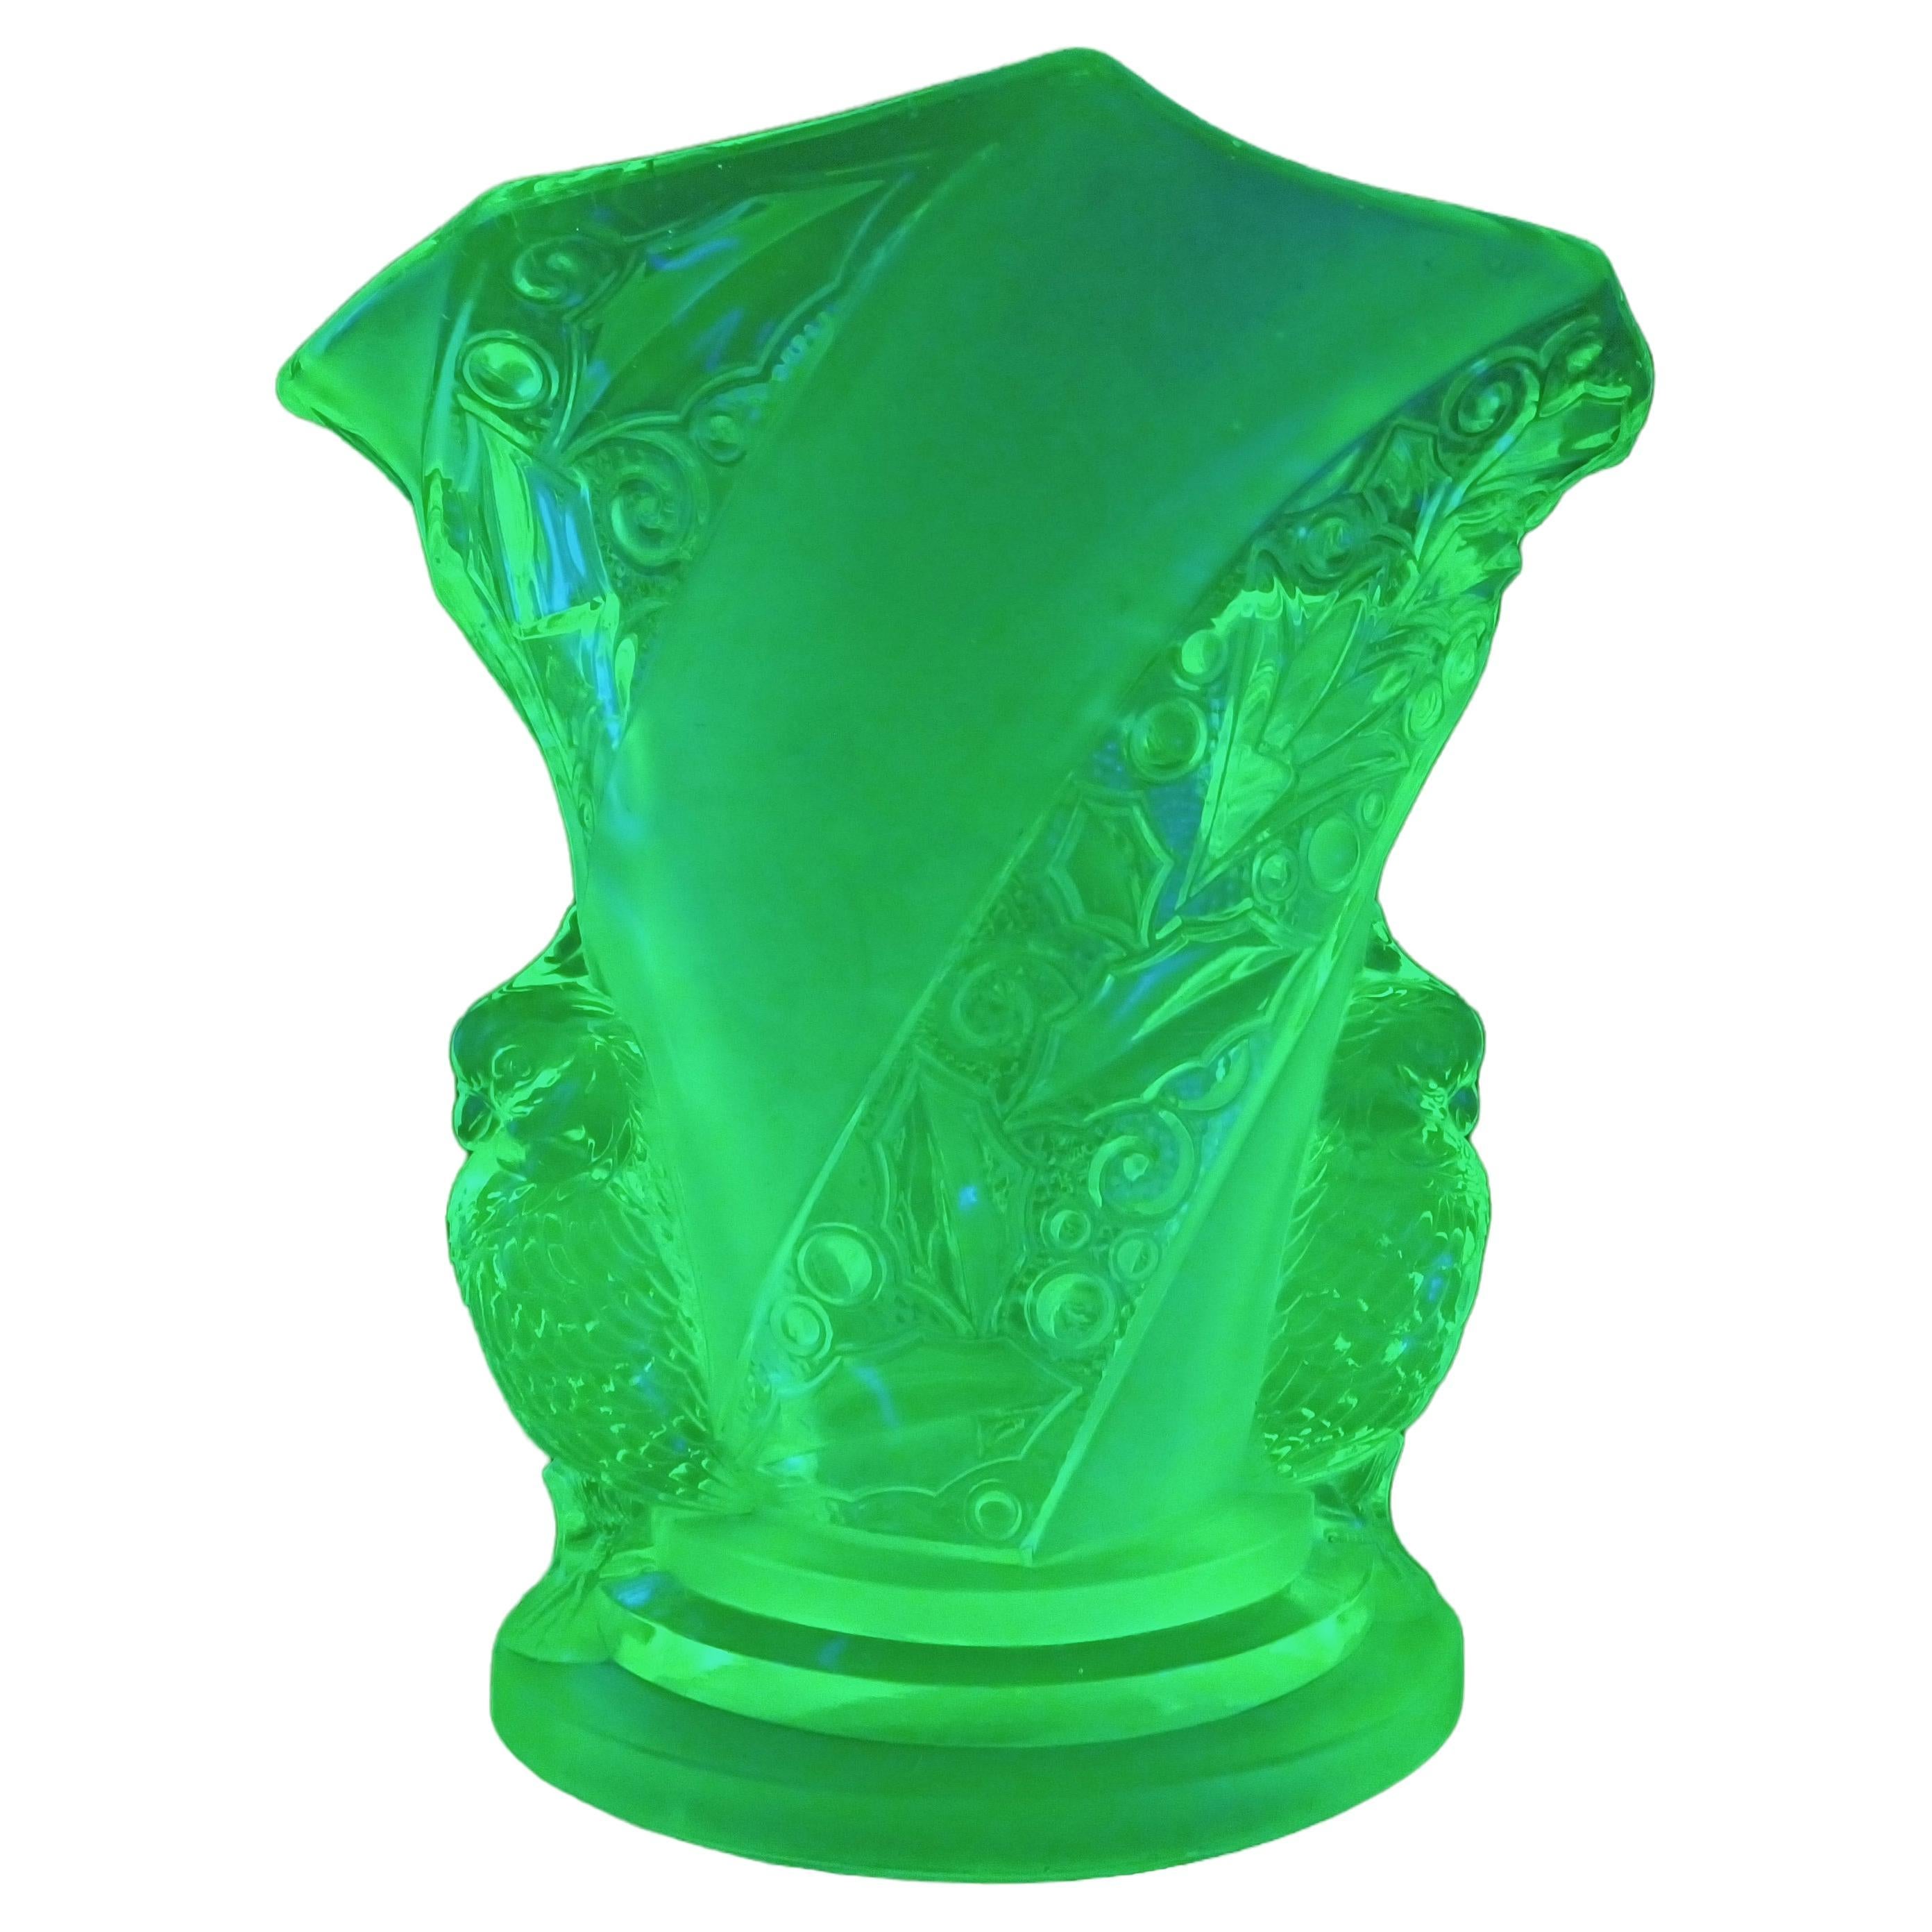 Brockwitz Art Deco Uranium Green Glass 'Parakeet' Bird Vase For Sale